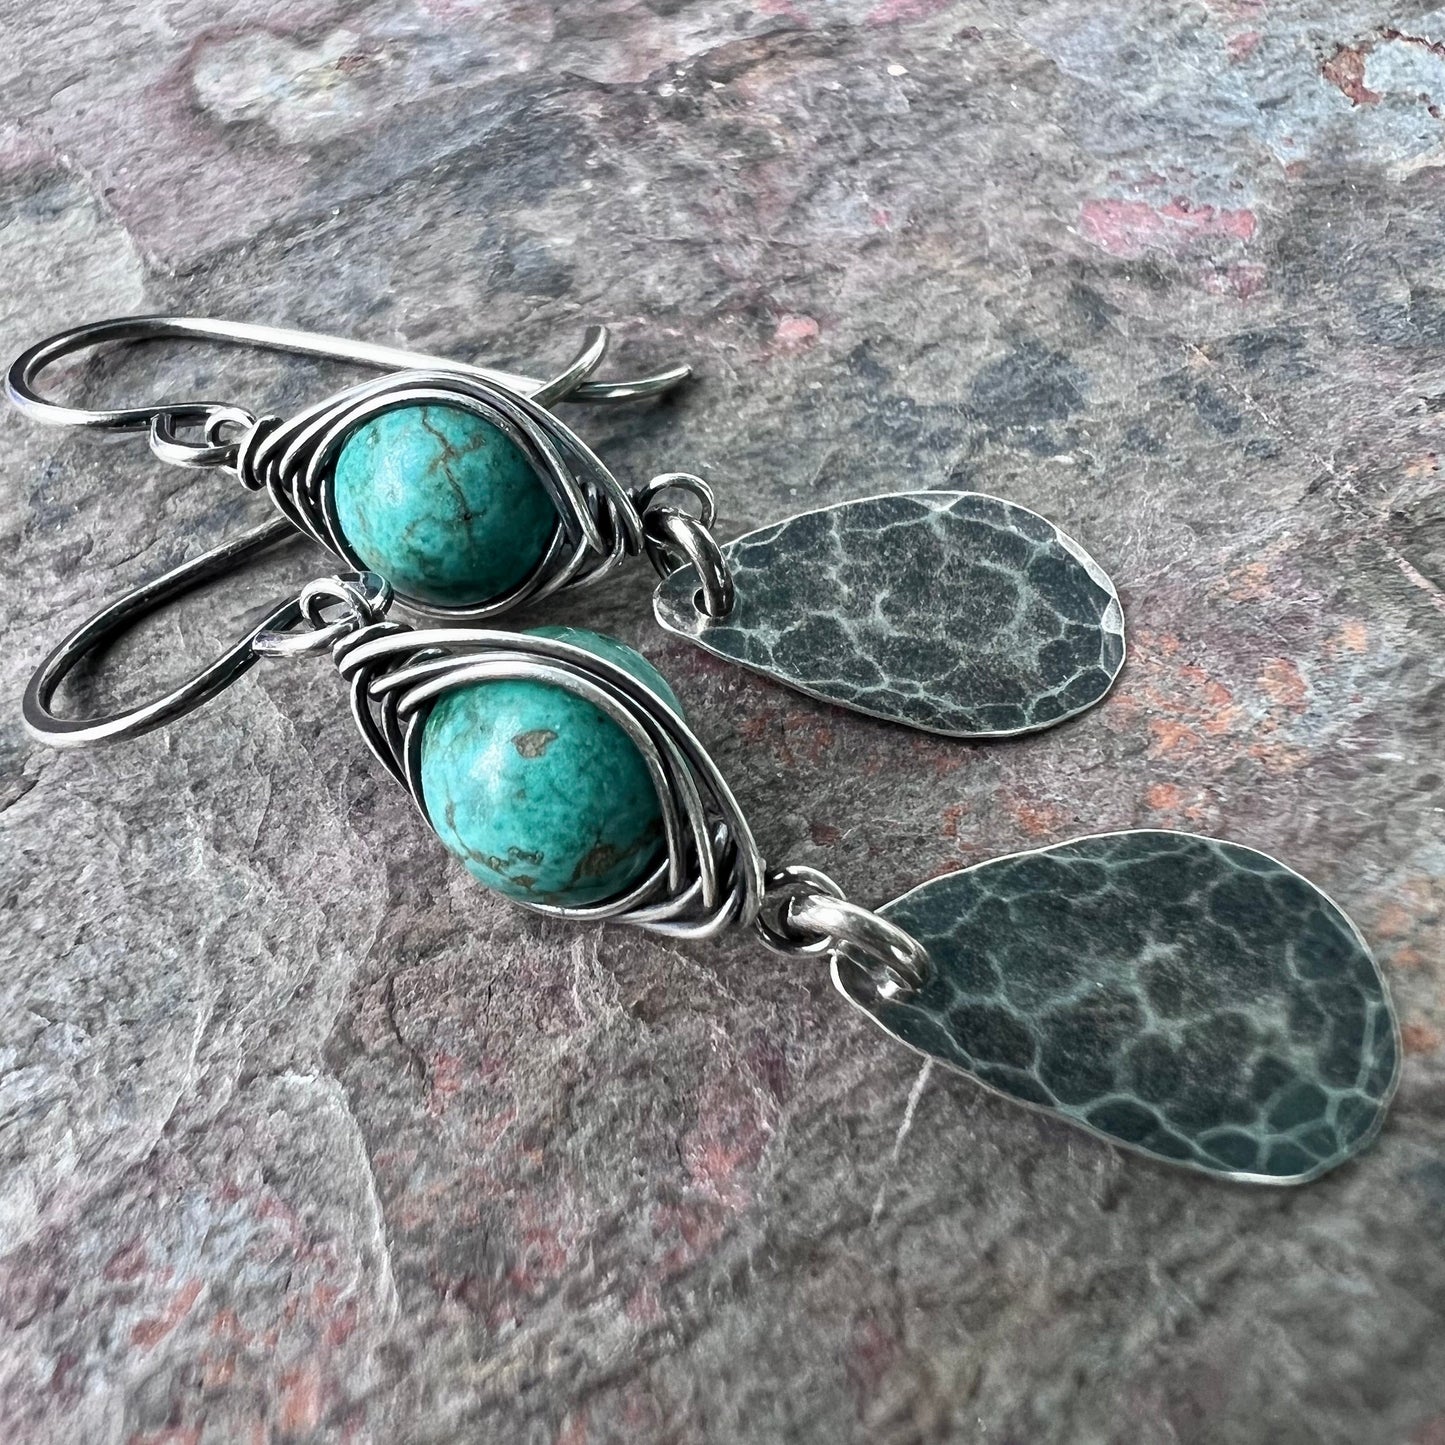 Turquoise Sterling Silver Earrings - Wire-wrapped Turquoise and Hammered Sterling Silver Teardrops Earrings